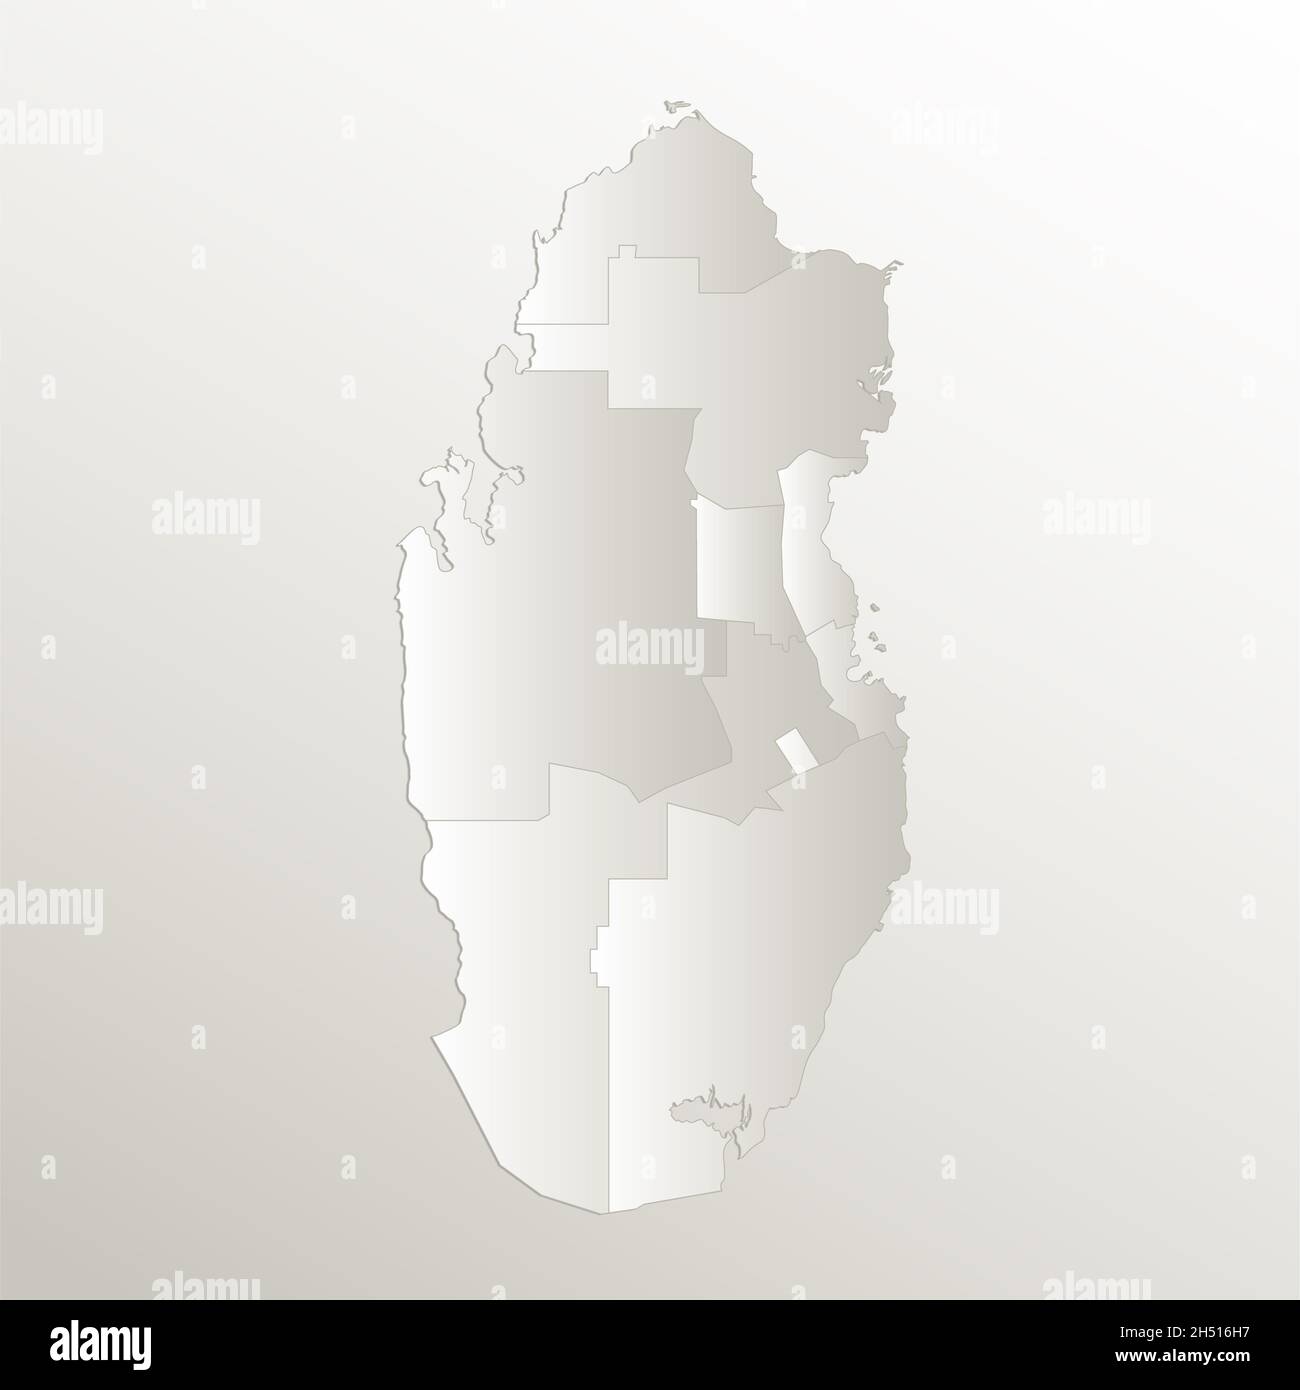 Mappa del Qatar, divisione amministrativa, separa regioni e nomi individuali, carta da cartolina 3D naturale, vuota Foto Stock